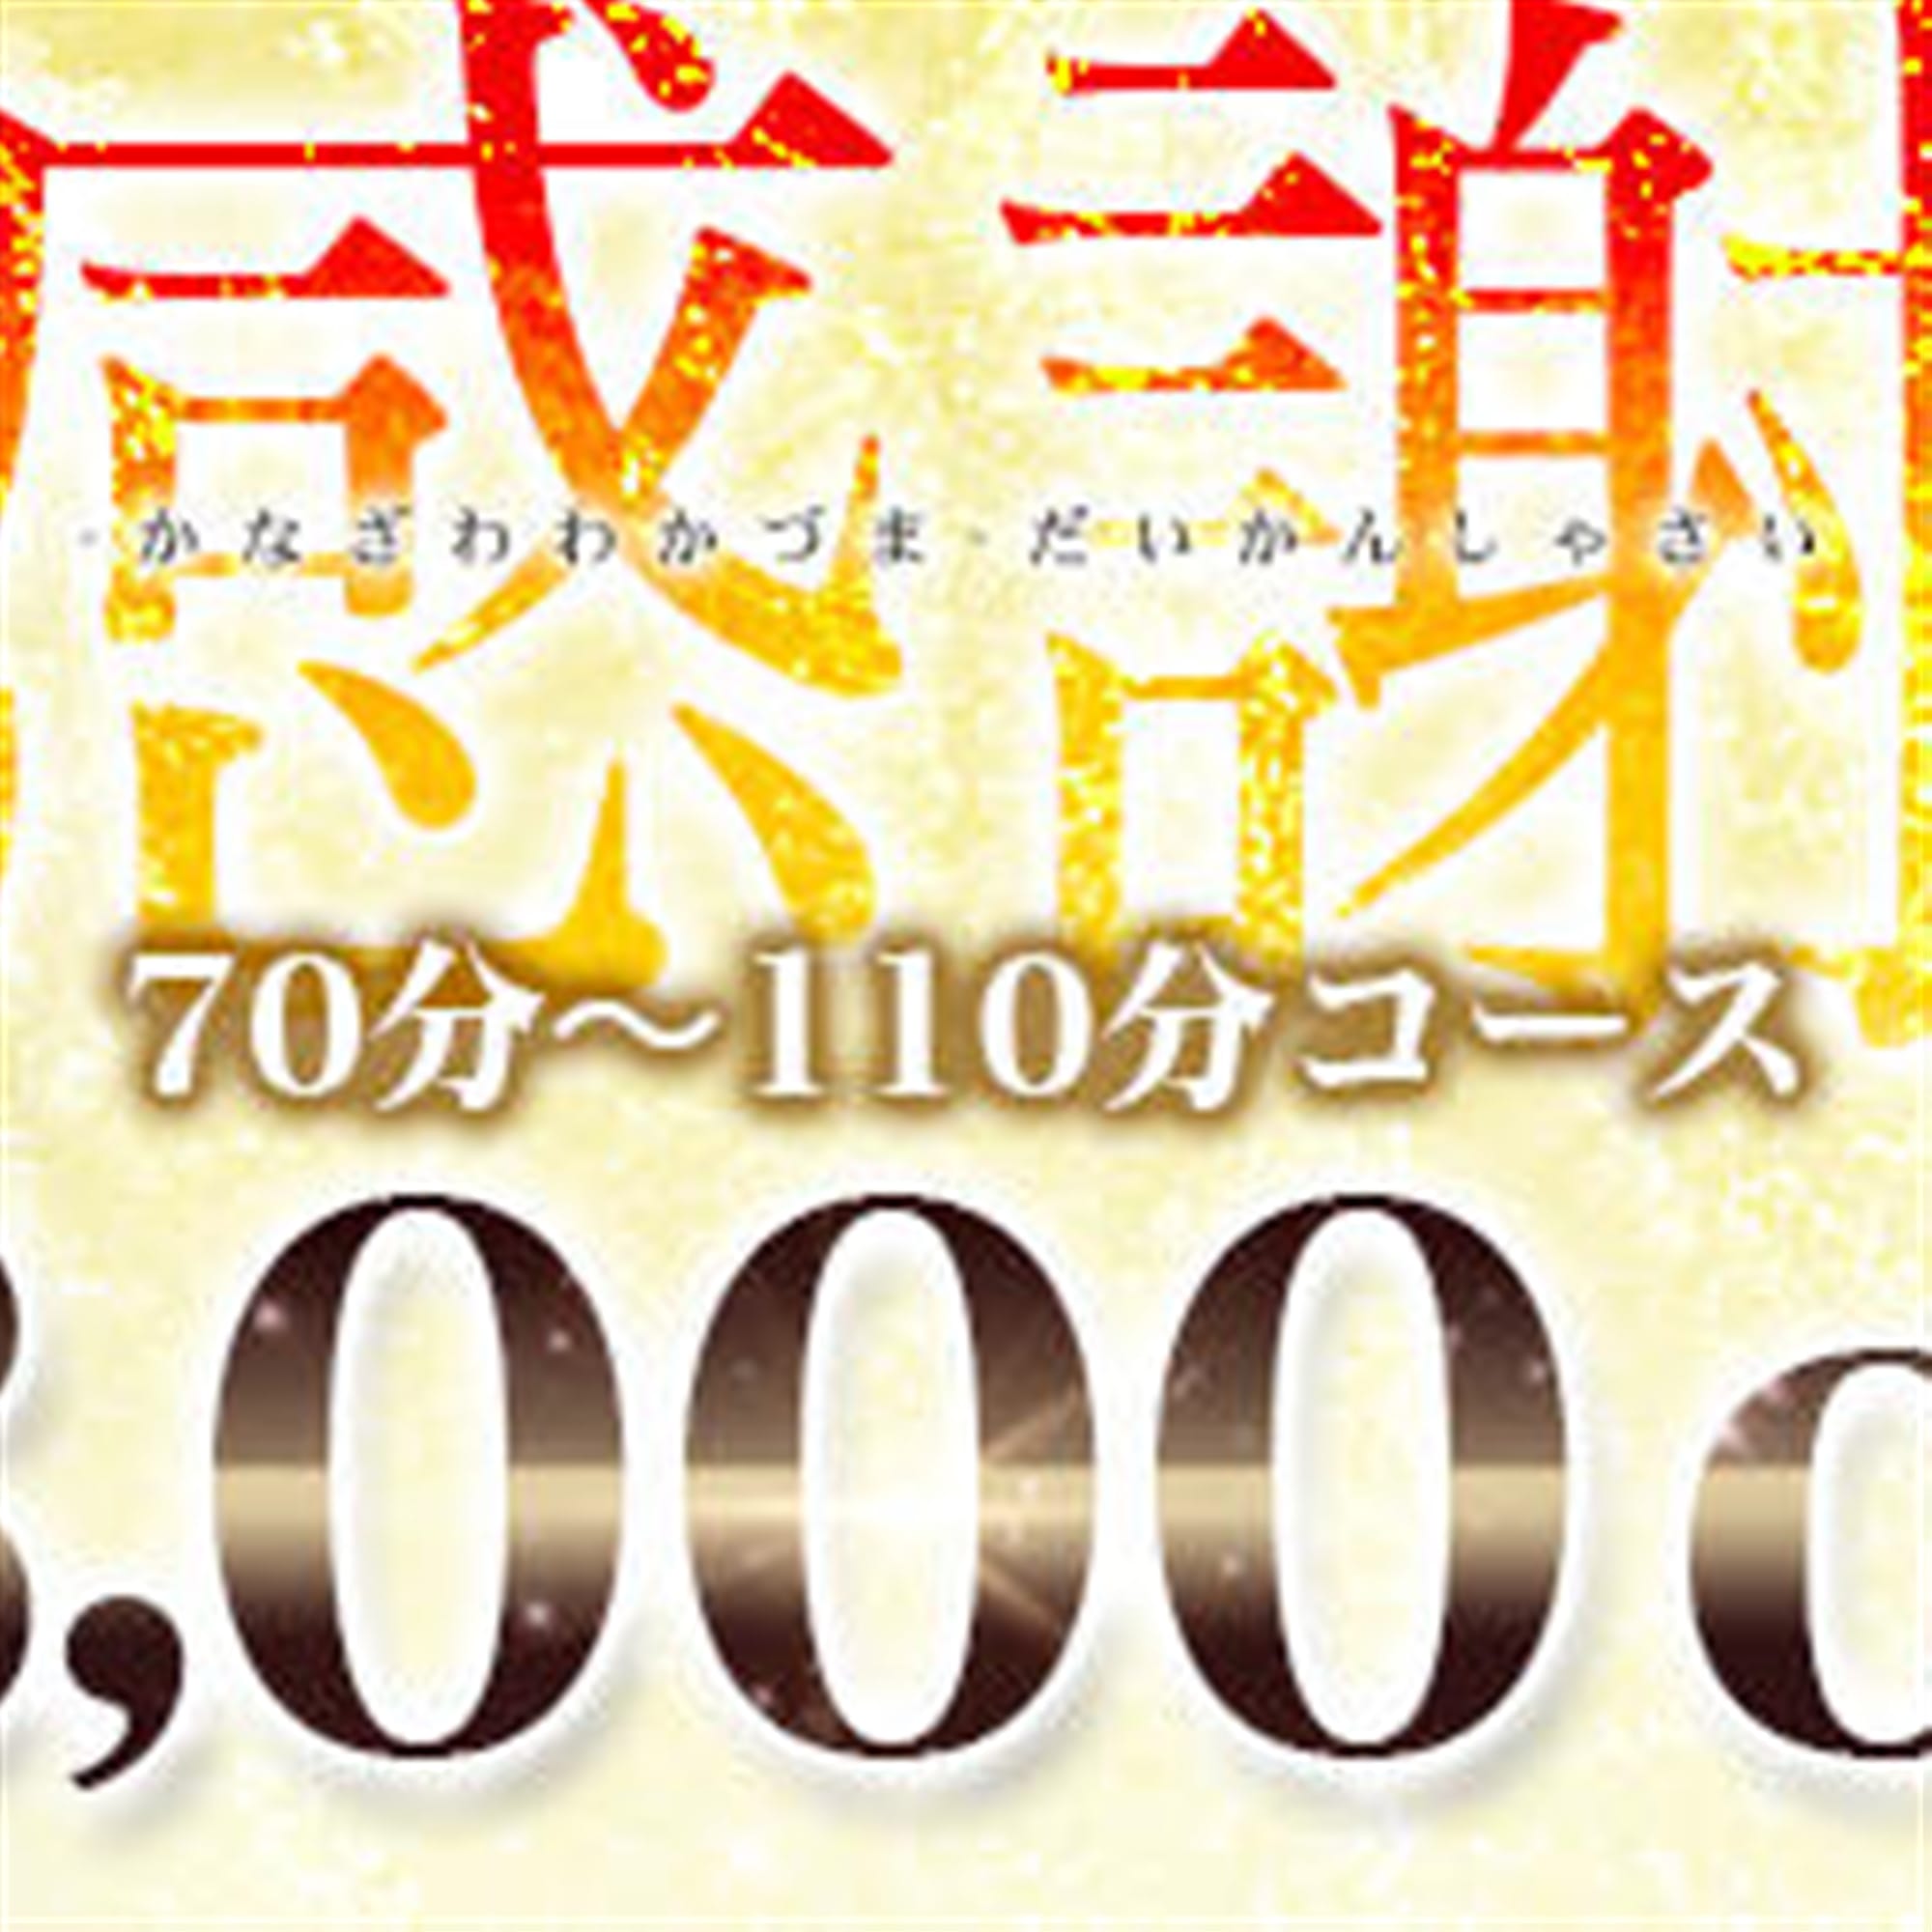 「3,000円OFFのSpecial Event+パネル指名無料」04/26(金) 14:00 | 金沢若妻のお得なニュース